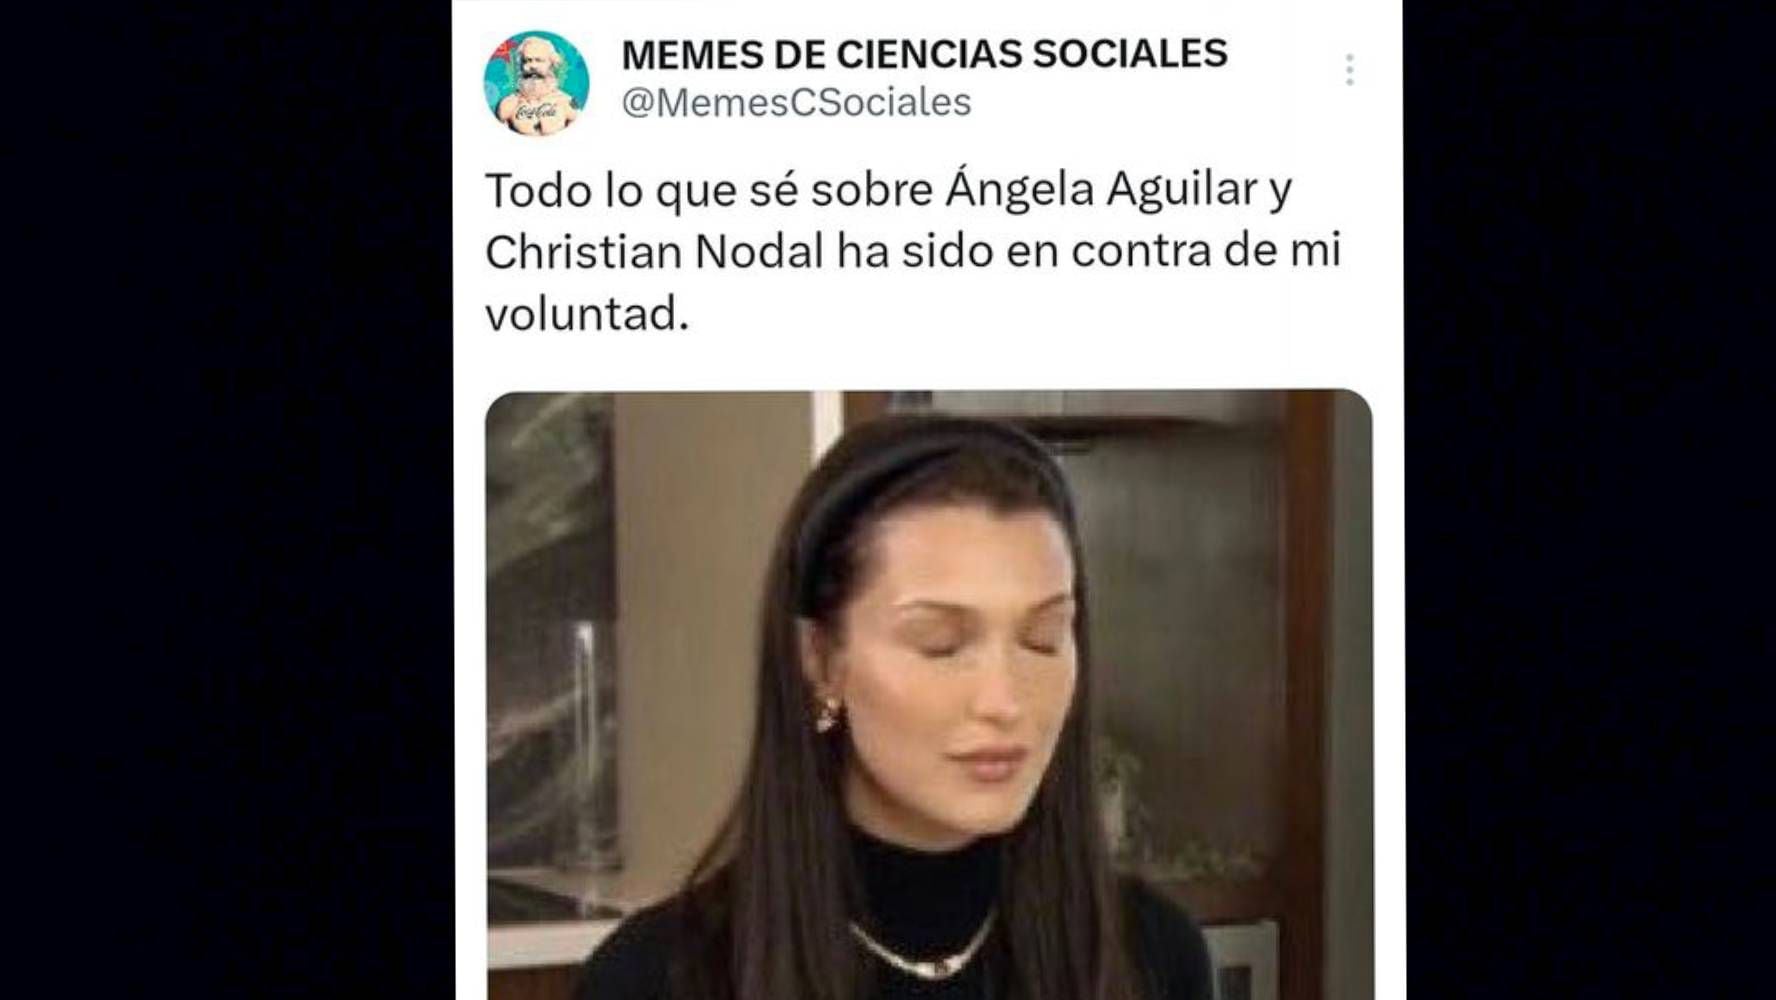 Los memes de la boda de Christian Nodal y Ángela Aguilar se viralizaron en varias redes sociales. (Foto: Especial).